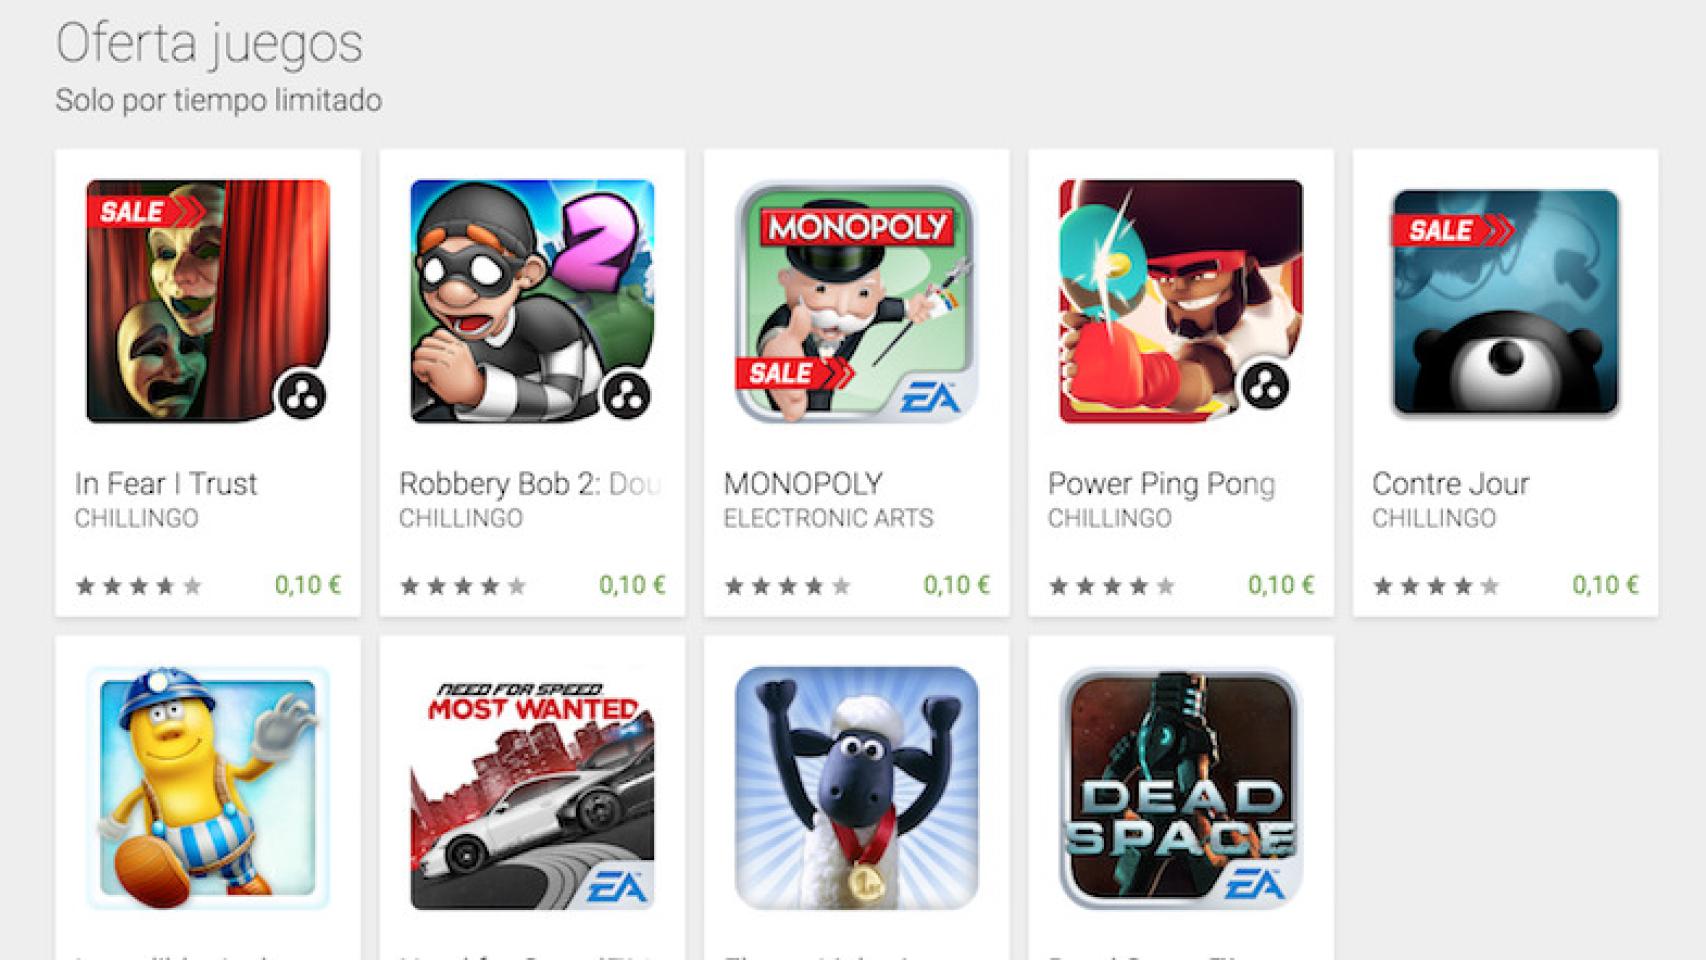 Ofertas en Google Play: juegos de EA y Chillingo por 0,10€